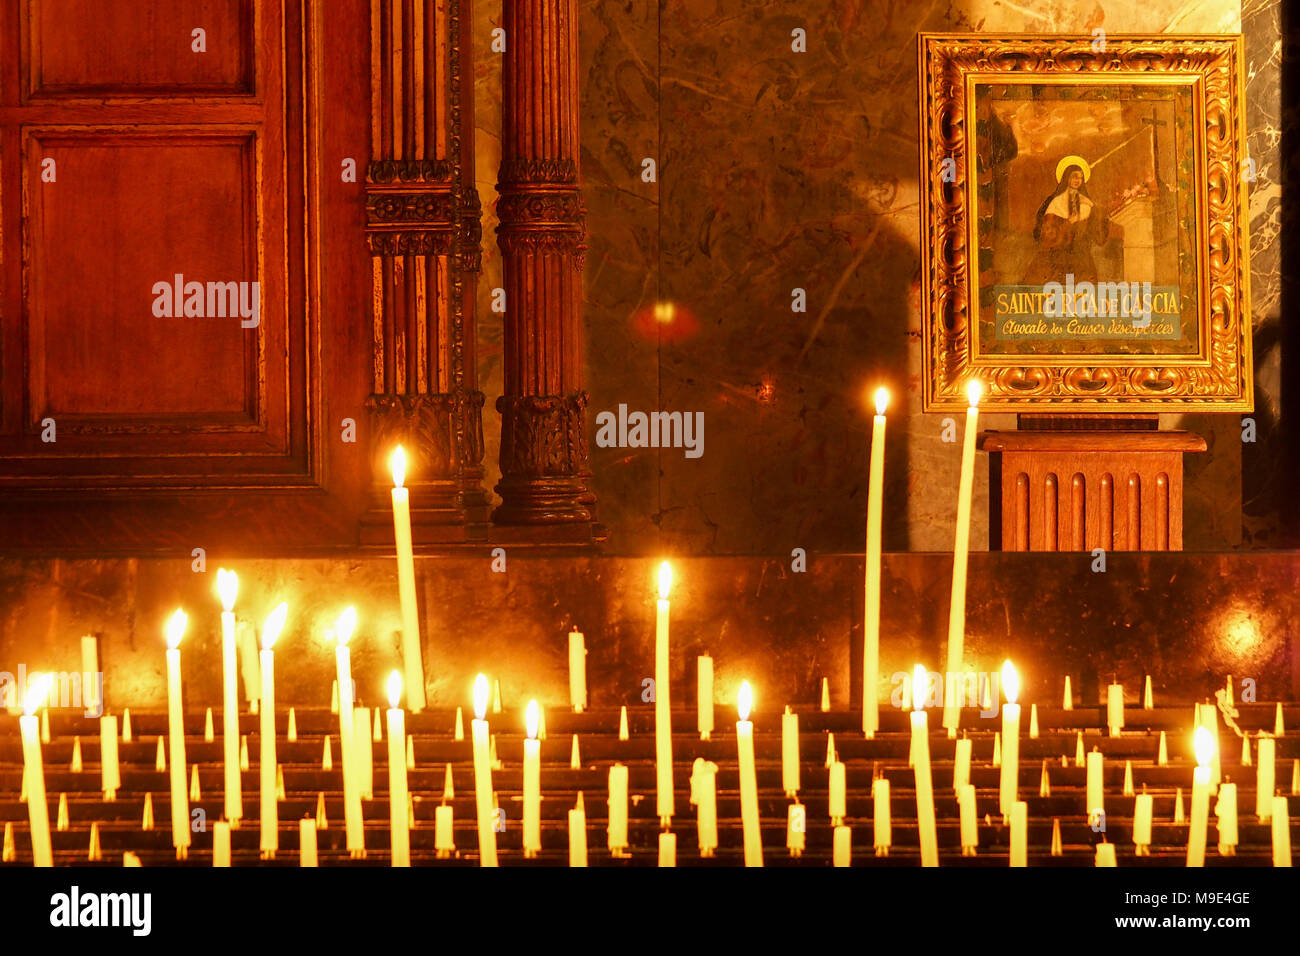 Candele accese di fronte all'icona di Santa Rita da Cascia, il santo patrono di Lost e impossibile provoca, nella chiesa della Madeleine a Parigi Foto Stock